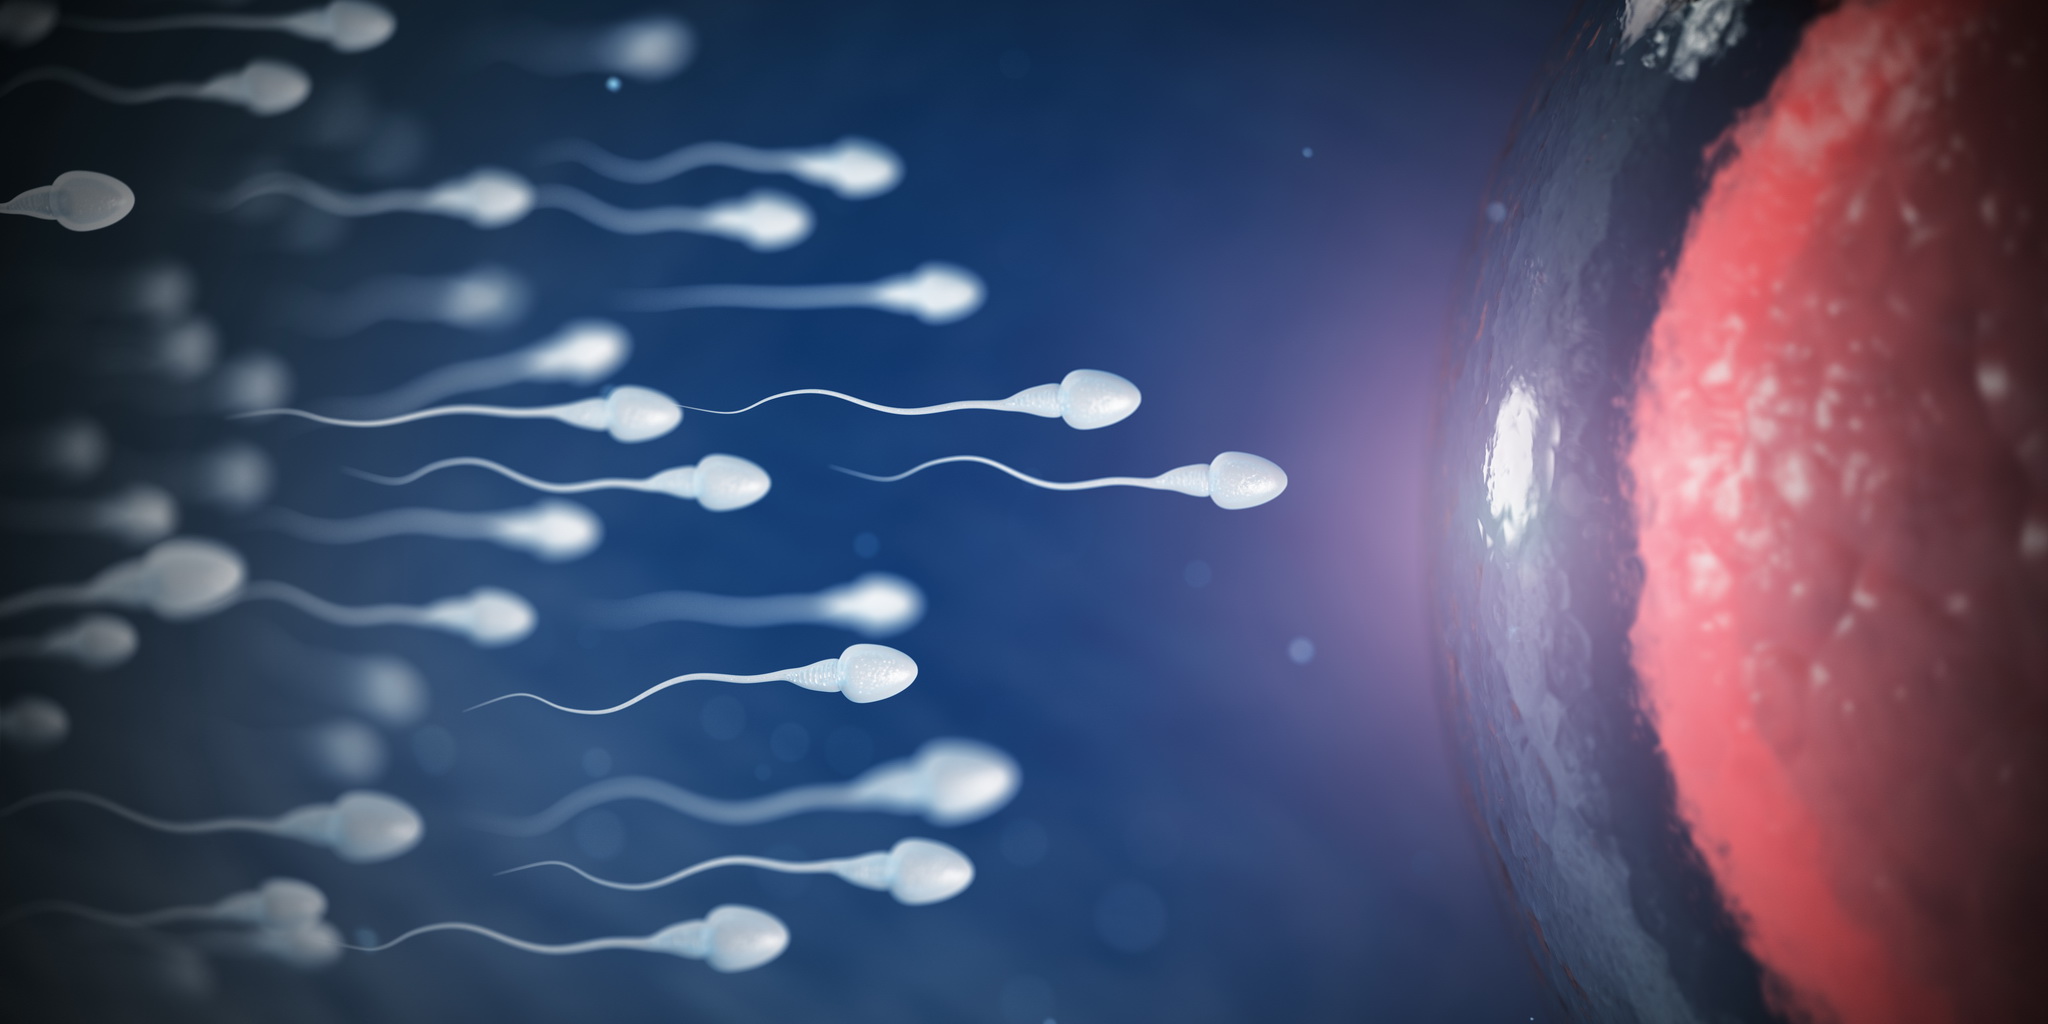 Az emberiség túlélését veszélyeztetheti, hogy egyre kevesebb a férfiak spermája